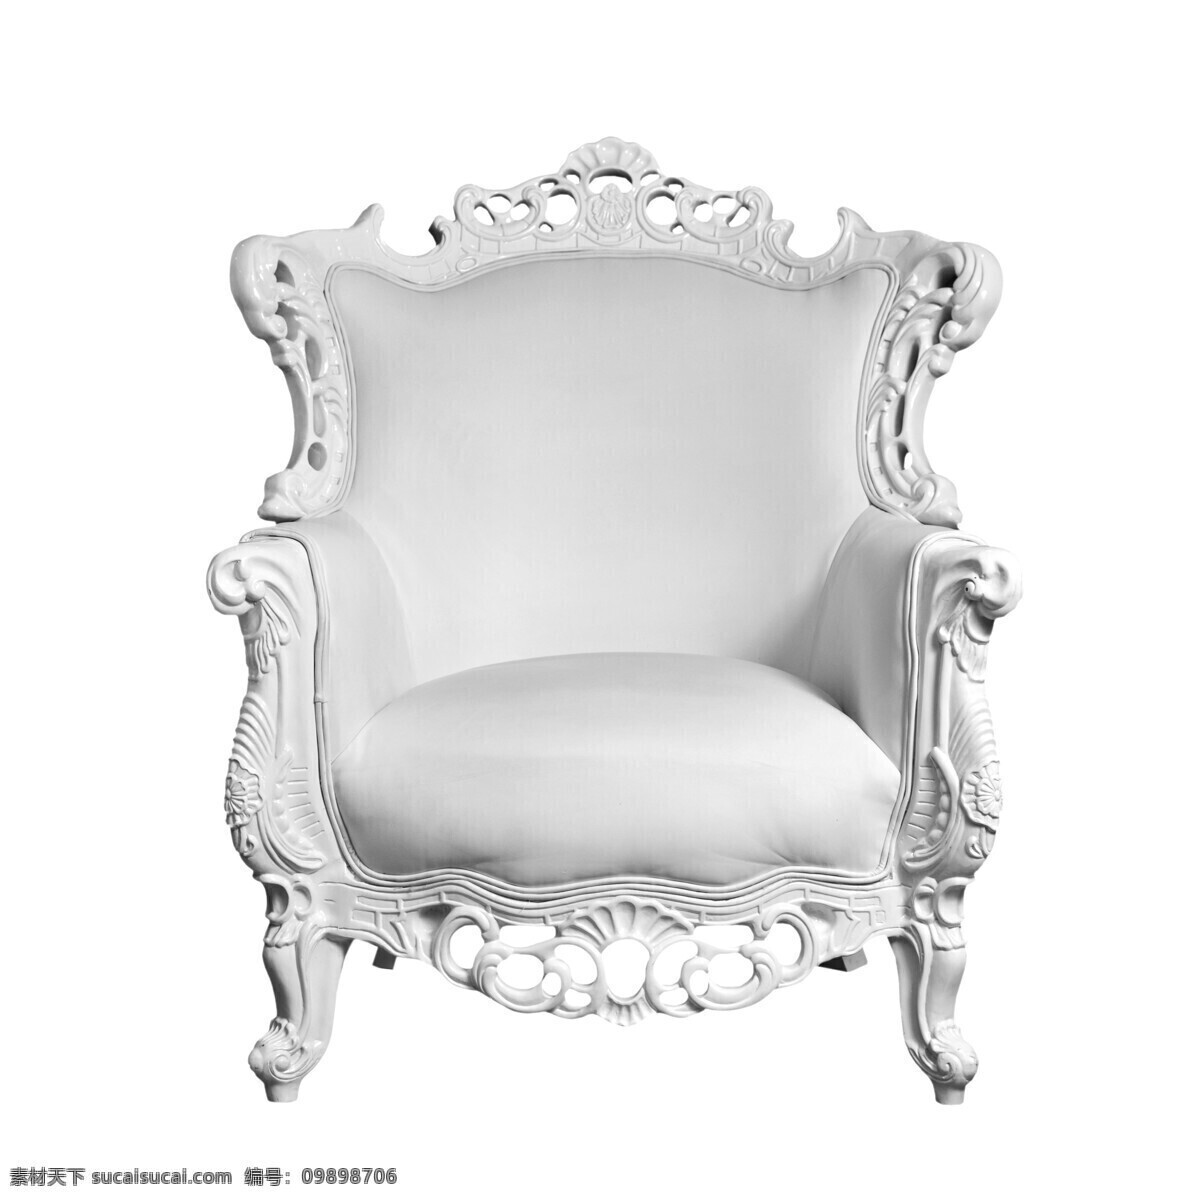 白色 欧式 沙发椅 黑白 照片 高清图片 黑白照片 白色雕刻花纹 座椅 椅子 沙发 华丽 奢华 小巧 家私 家具 真皮 全白色 家具电器 生活百科